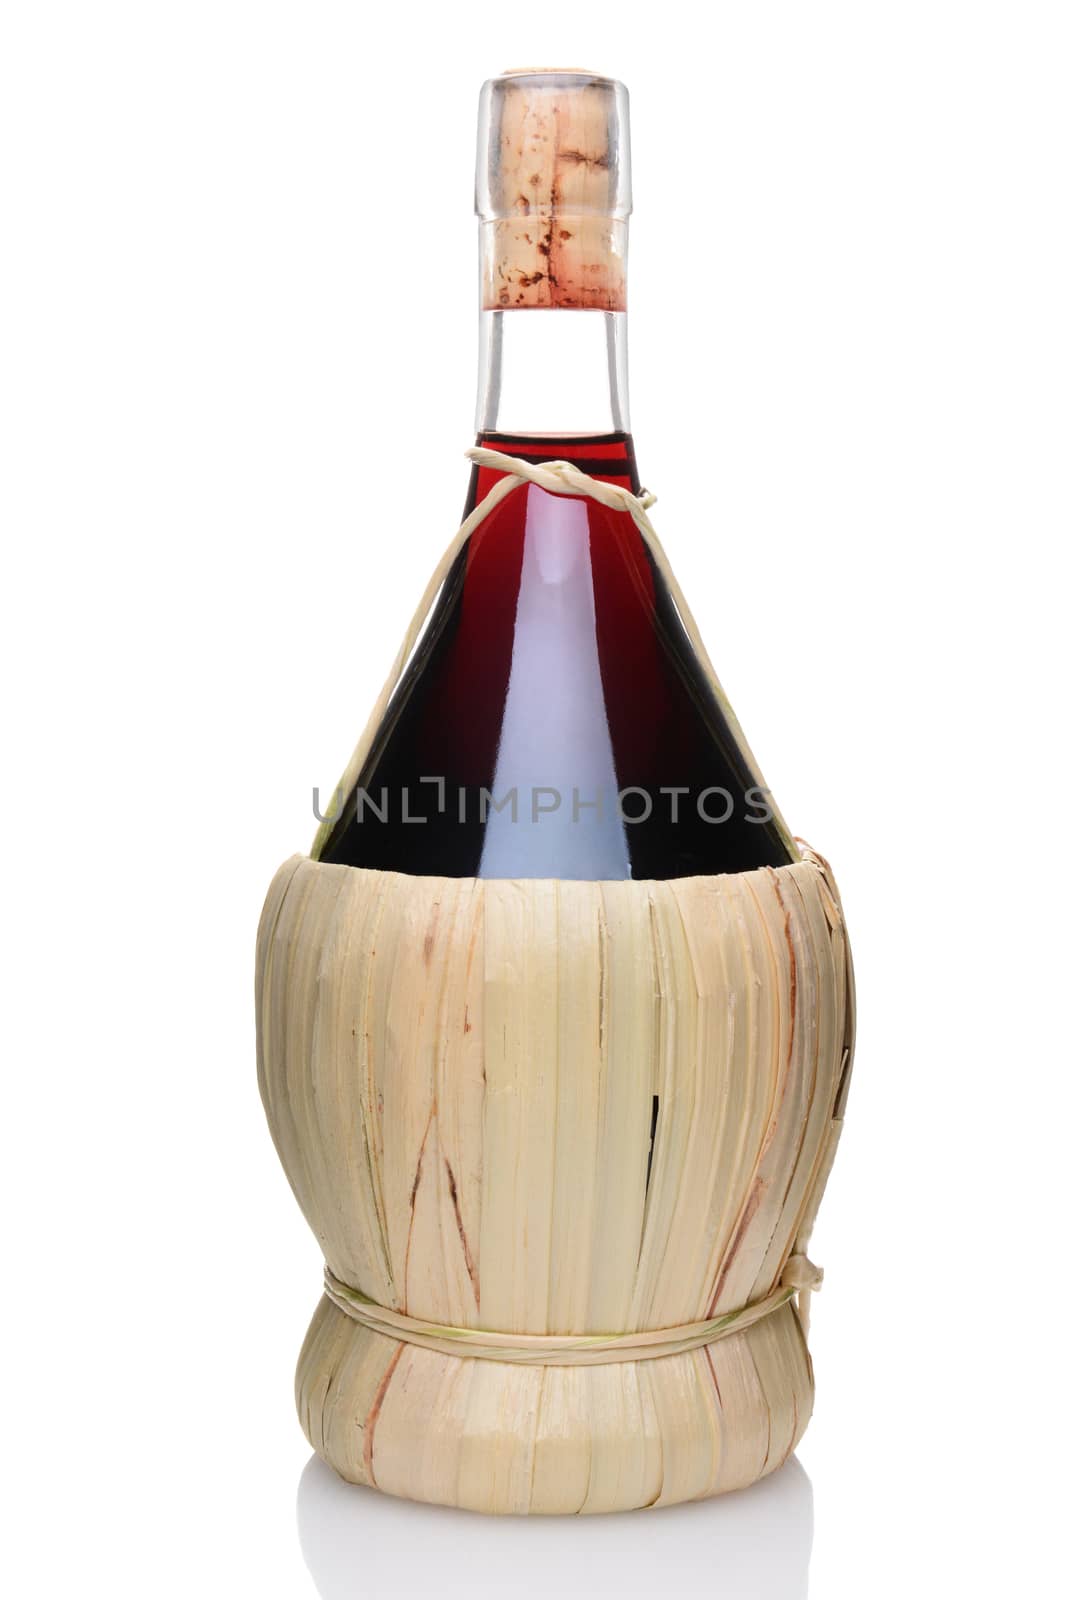 A Bottle of Chianti Wine by sCukrov